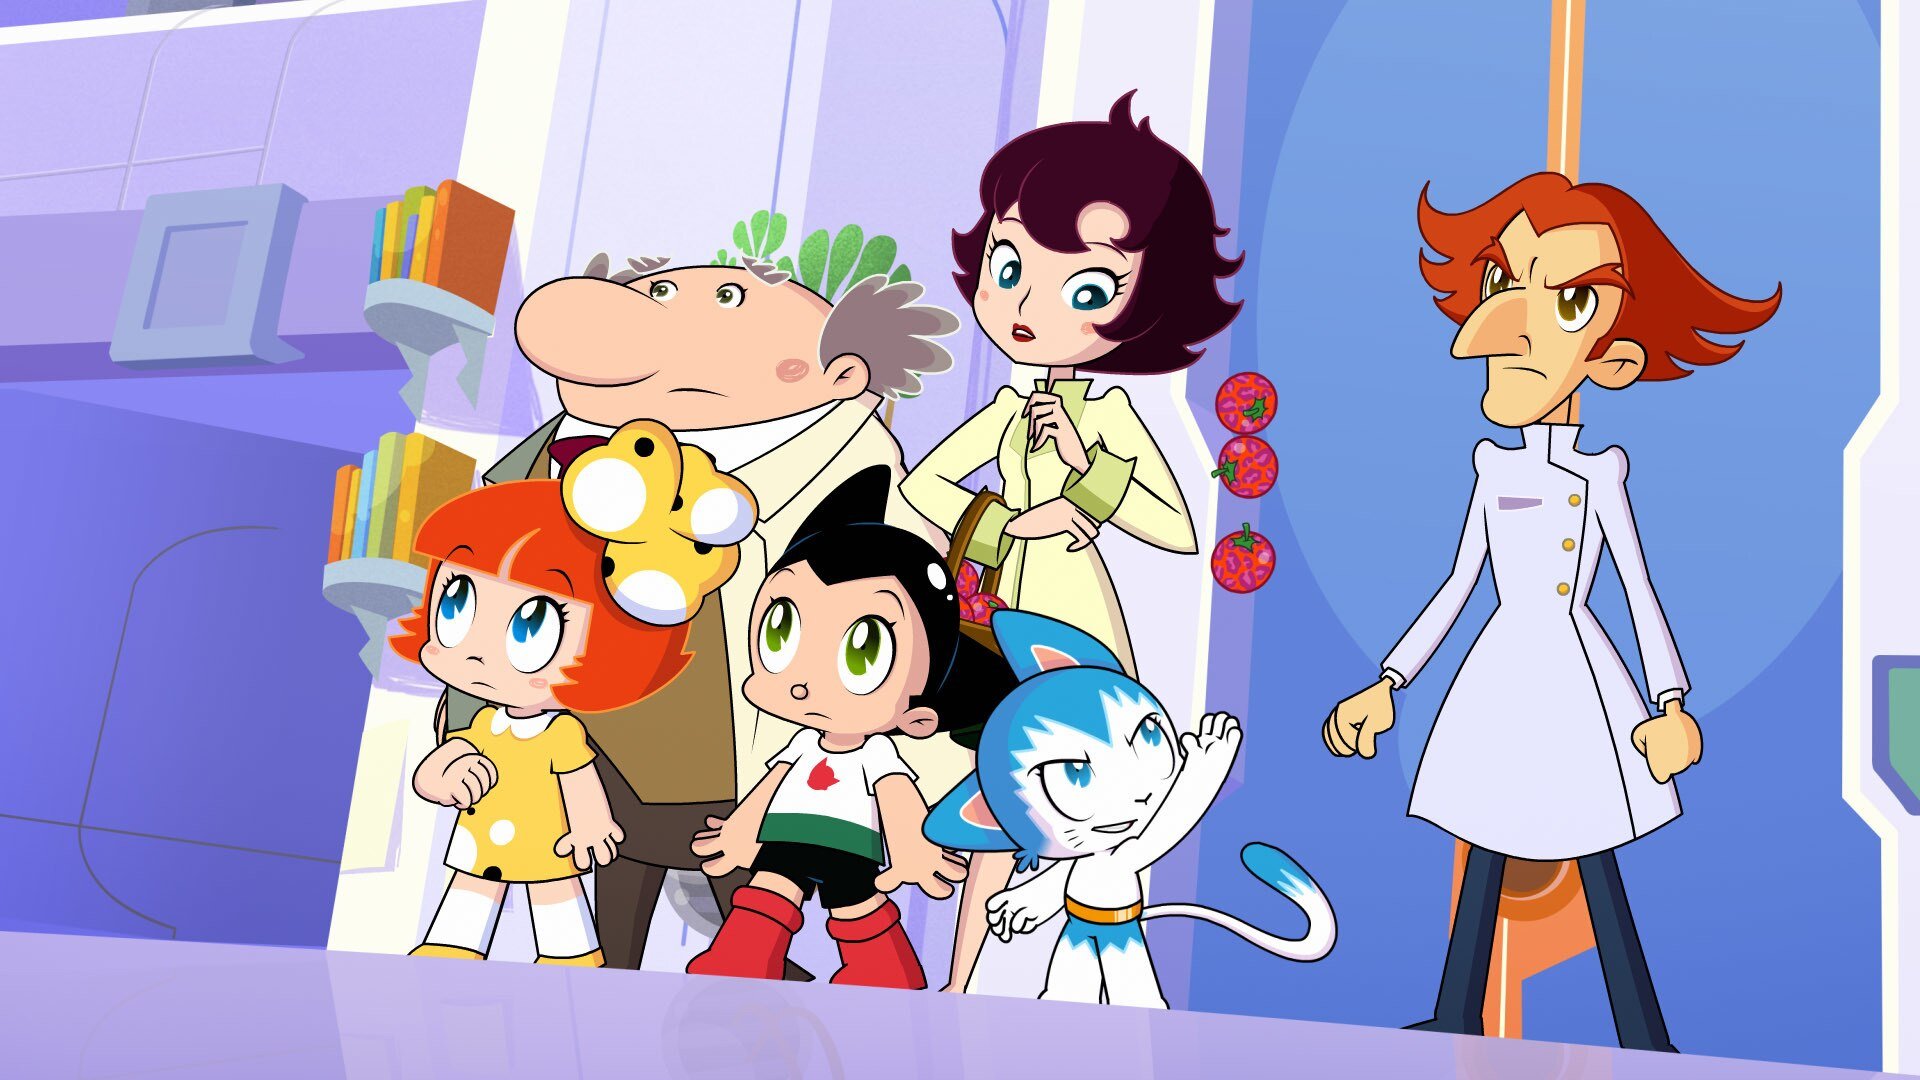 Watch Go Astro Boy Go Season 1 Episode 17 Online Stream Full Episodes